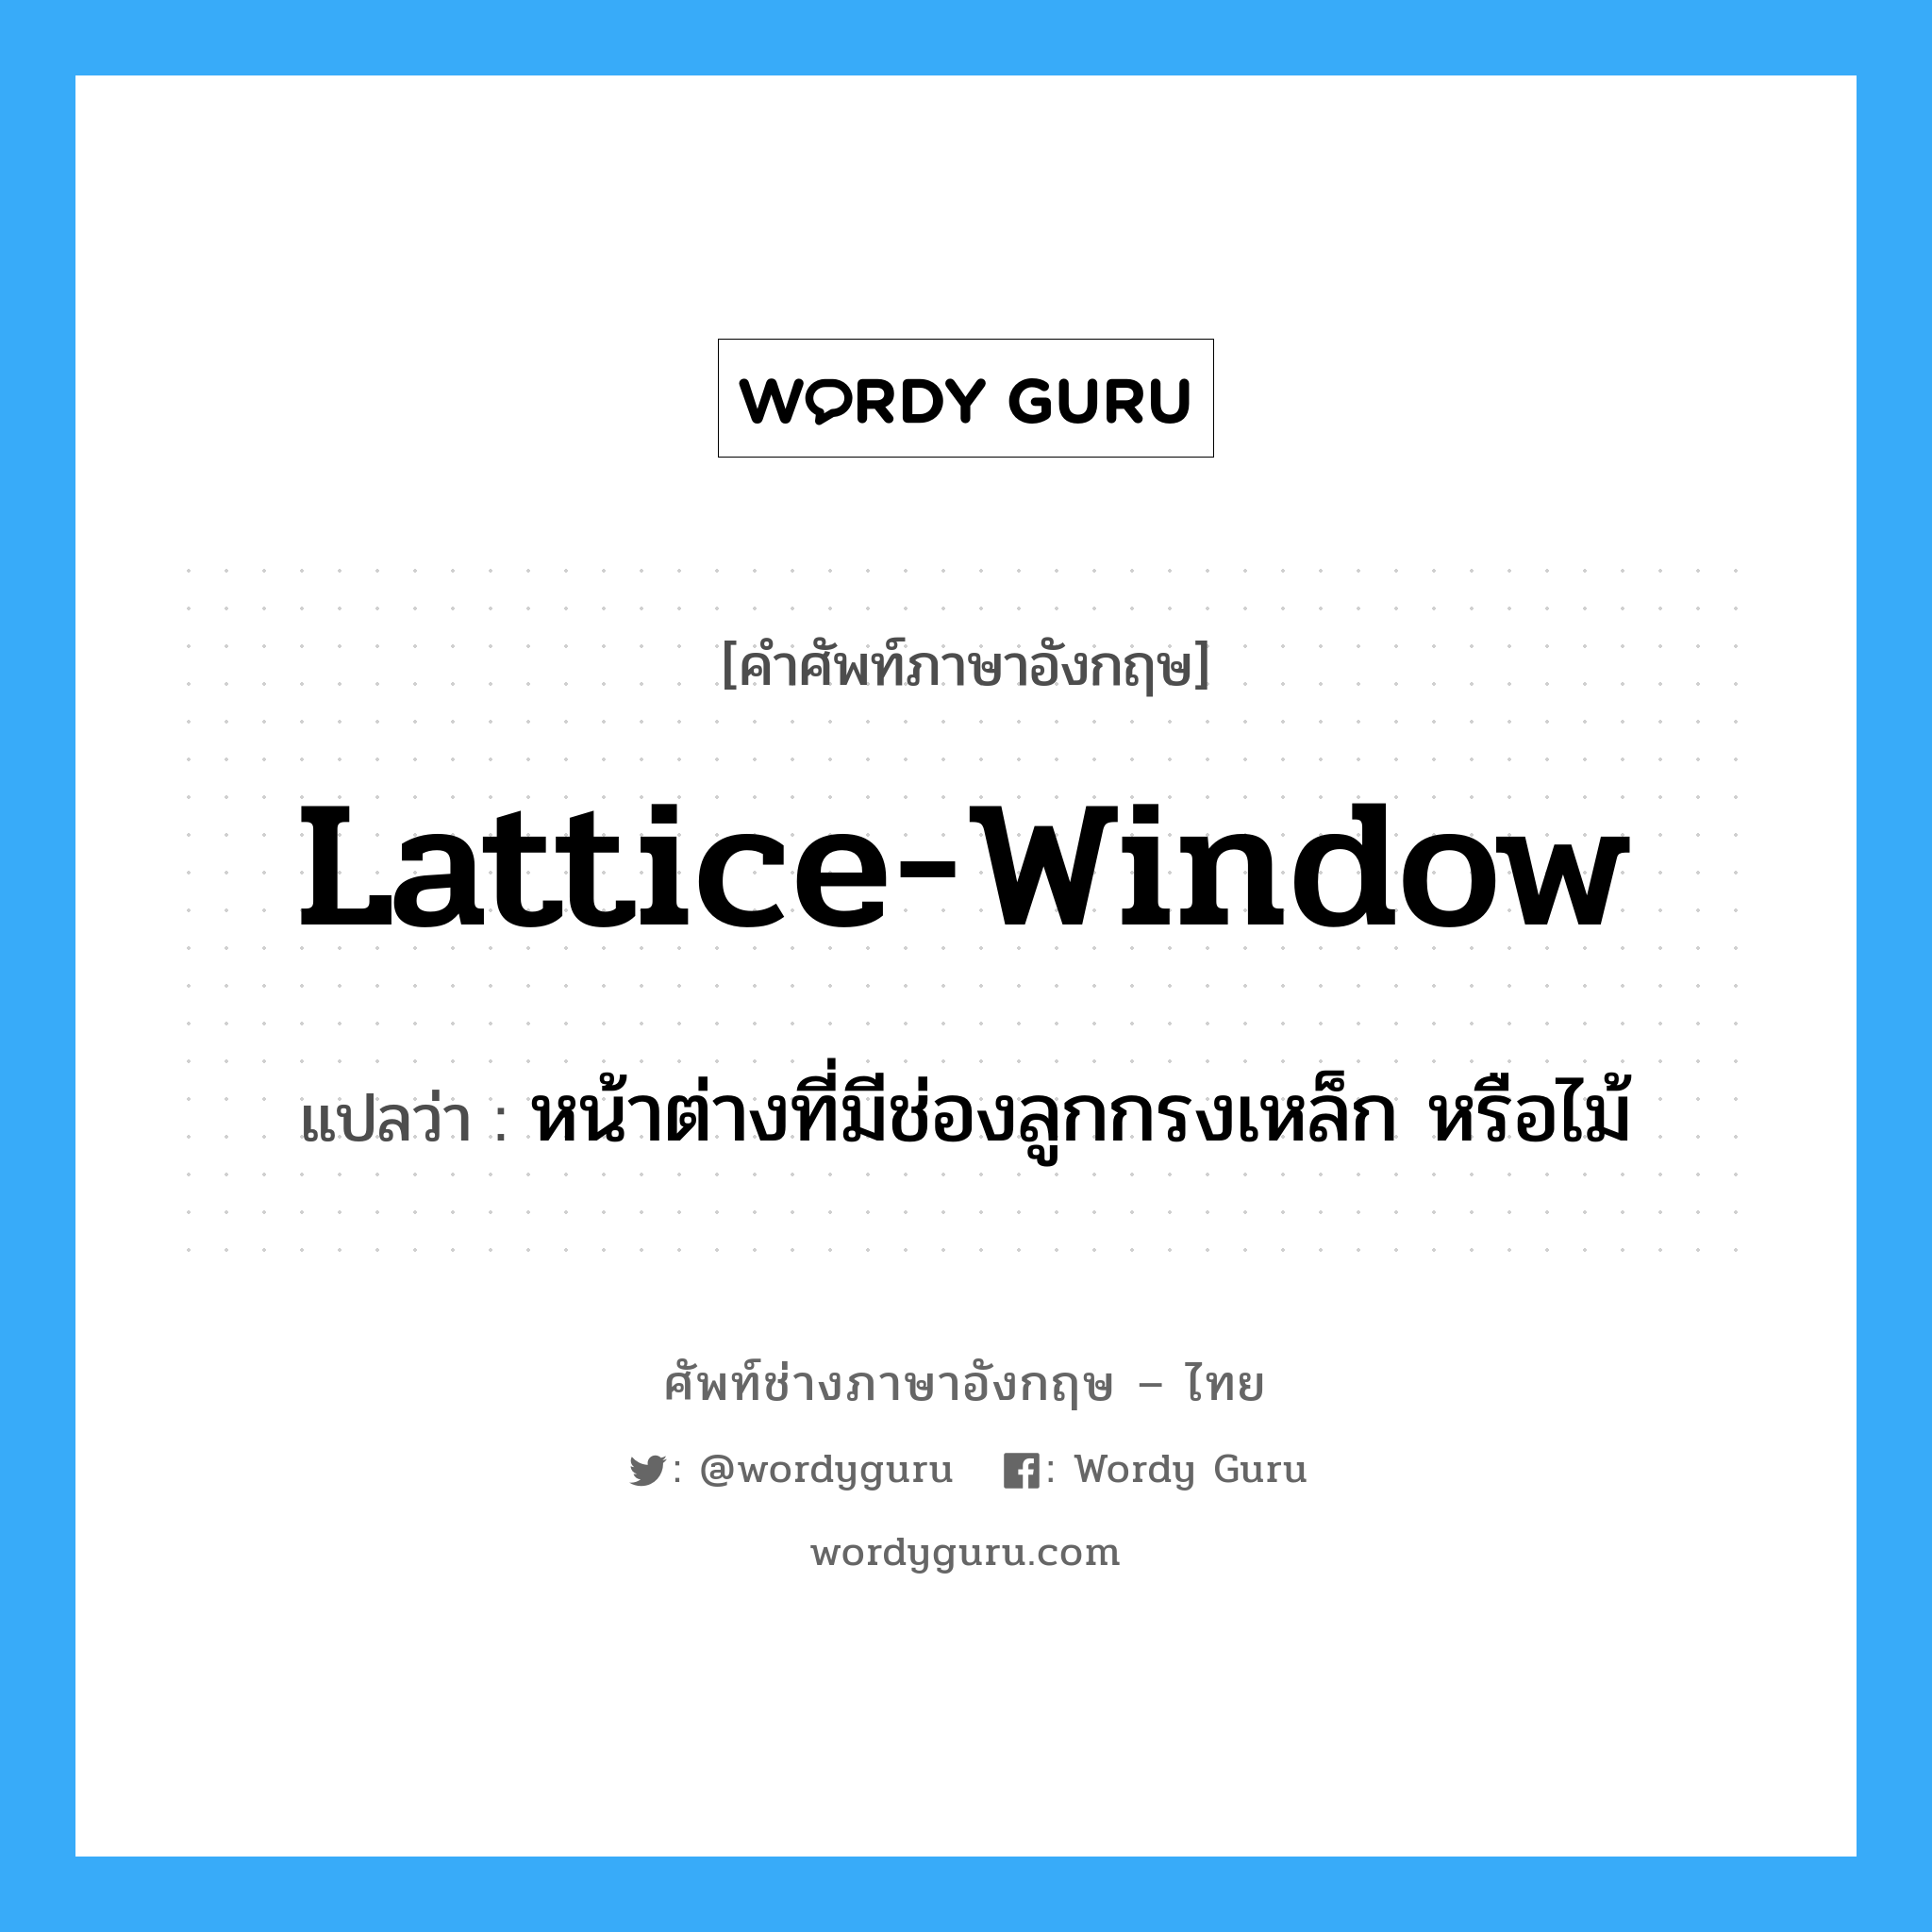 หน้าต่างที่มีช่องลูกกรงเหล็ก หรือไม้ ภาษาอังกฤษ?, คำศัพท์ช่างภาษาอังกฤษ - ไทย หน้าต่างที่มีช่องลูกกรงเหล็ก หรือไม้ คำศัพท์ภาษาอังกฤษ หน้าต่างที่มีช่องลูกกรงเหล็ก หรือไม้ แปลว่า lattice-window